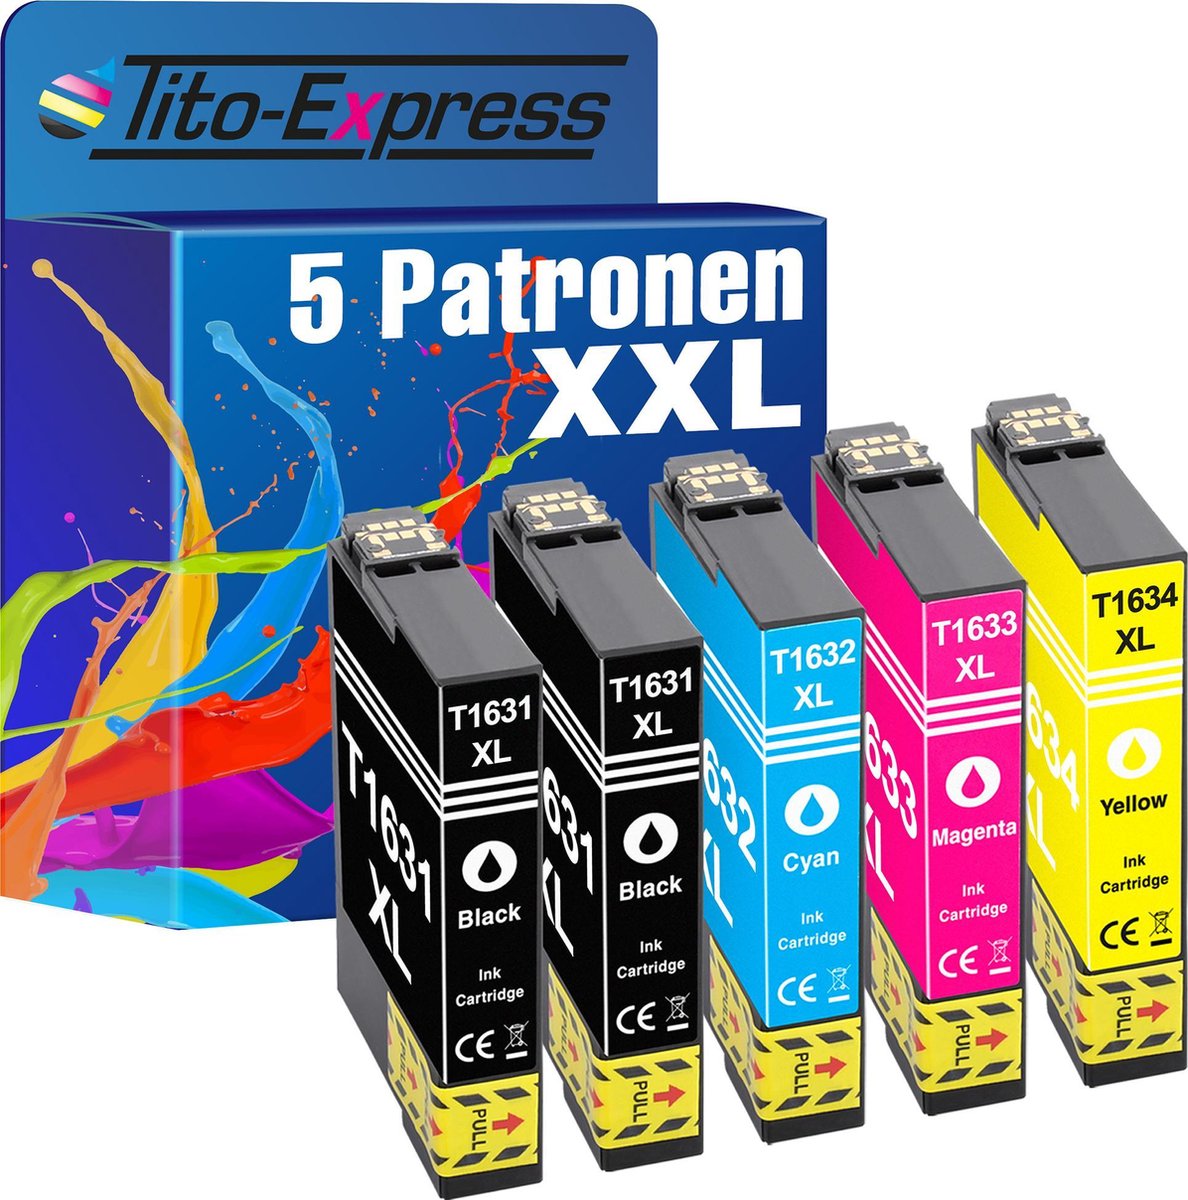 Tito-Express Epson T1631-T-1634 5x inkt cartridge alternatief voor Epson 16XL Workforce WF-2760 2750 2630 2510 2530 2660 2650 2520 - Tito-EXpress